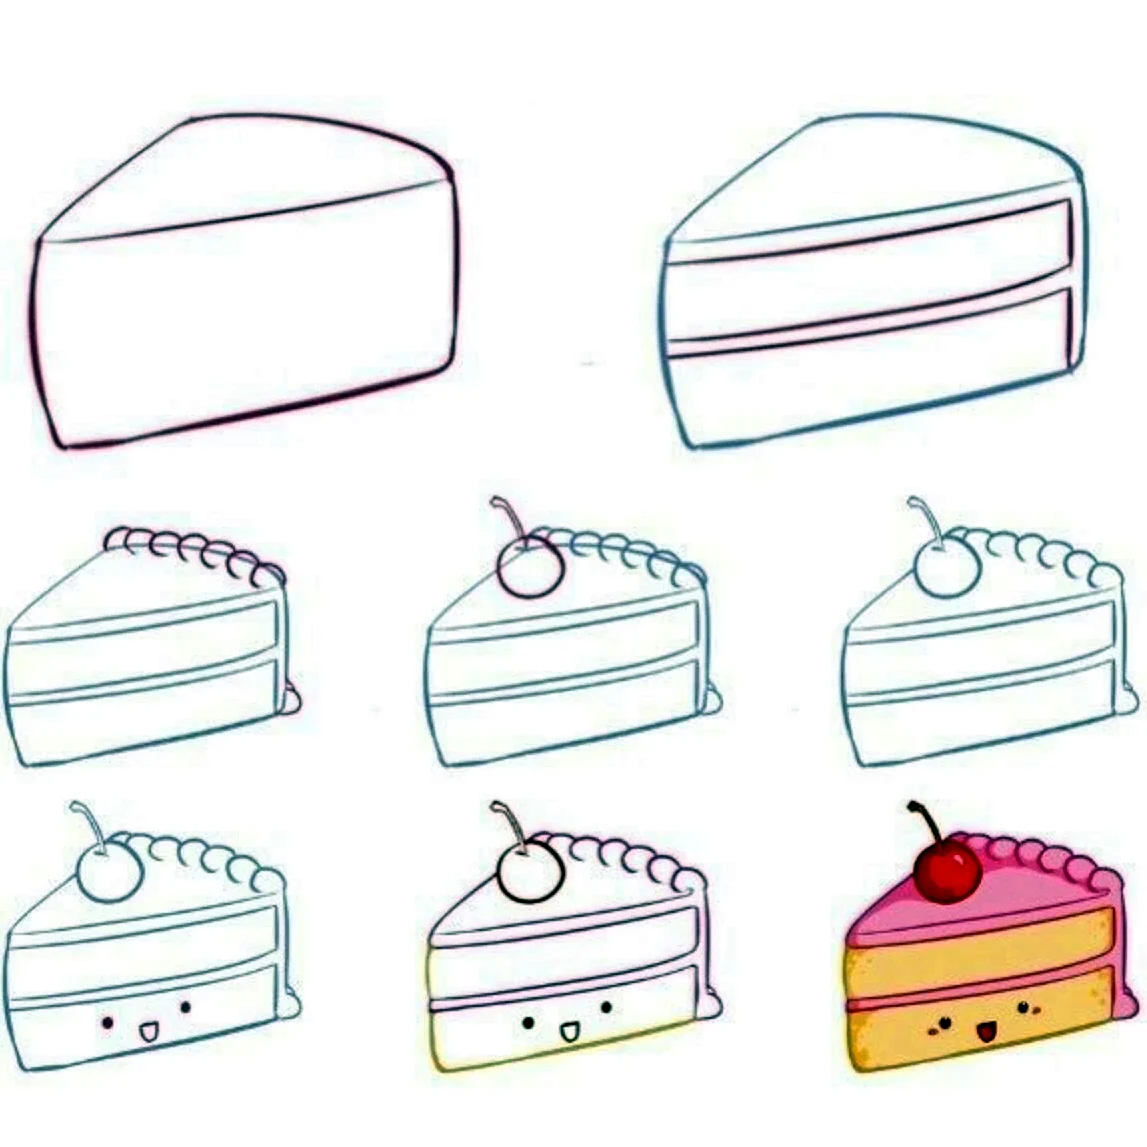 Рисунок торта для срисовки